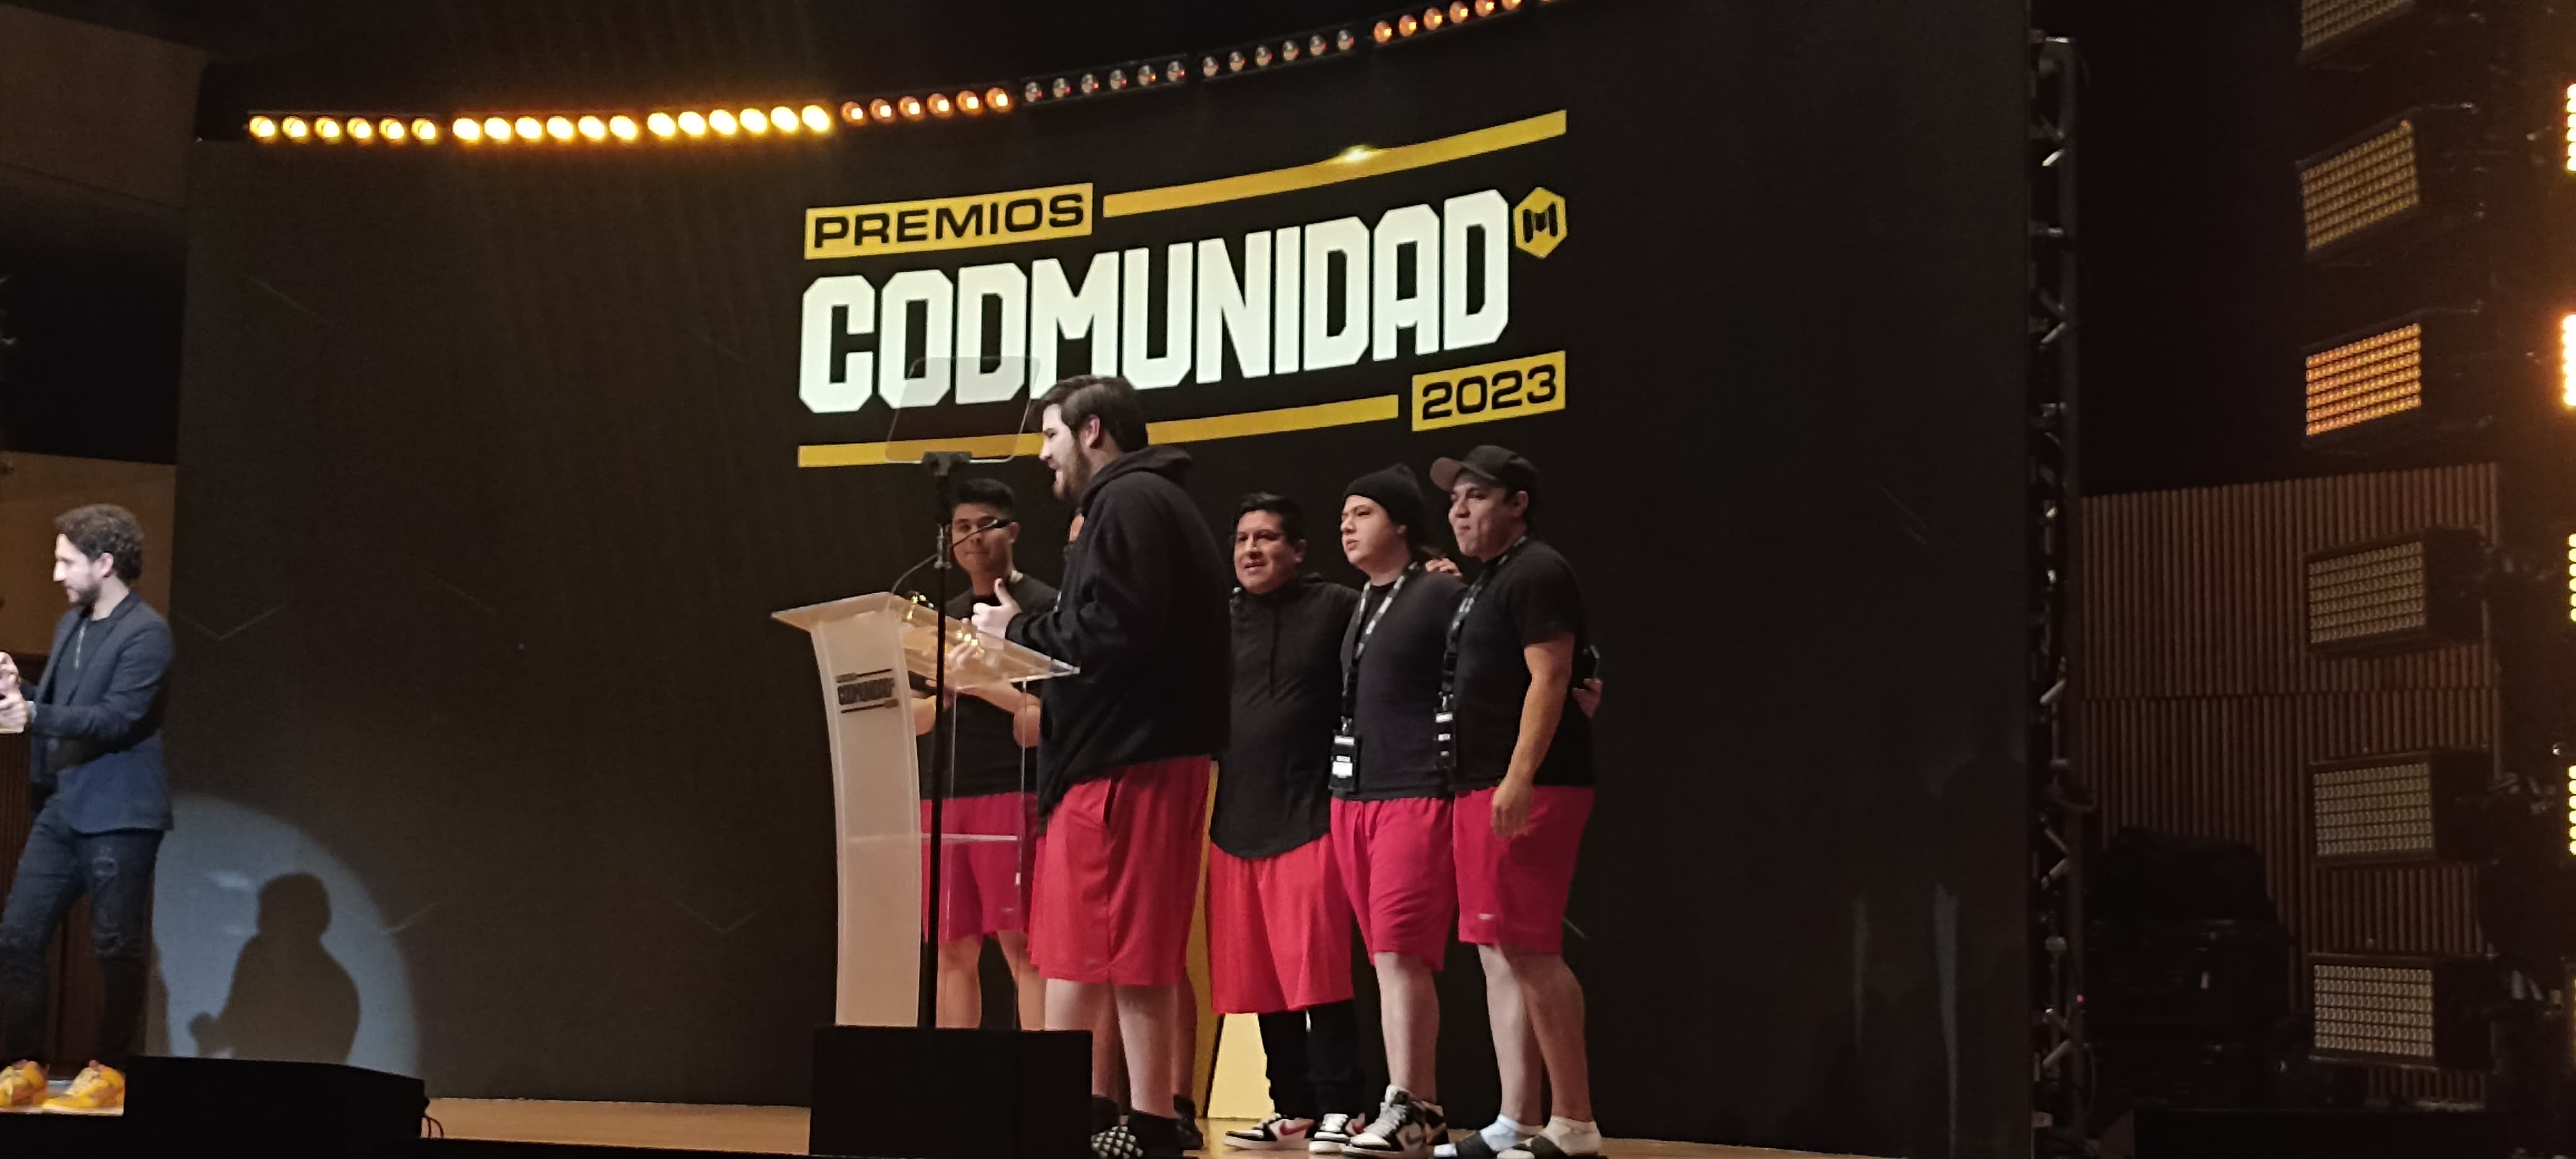 Premios CODMUNIDAD 2023 en Ciudad de México 14